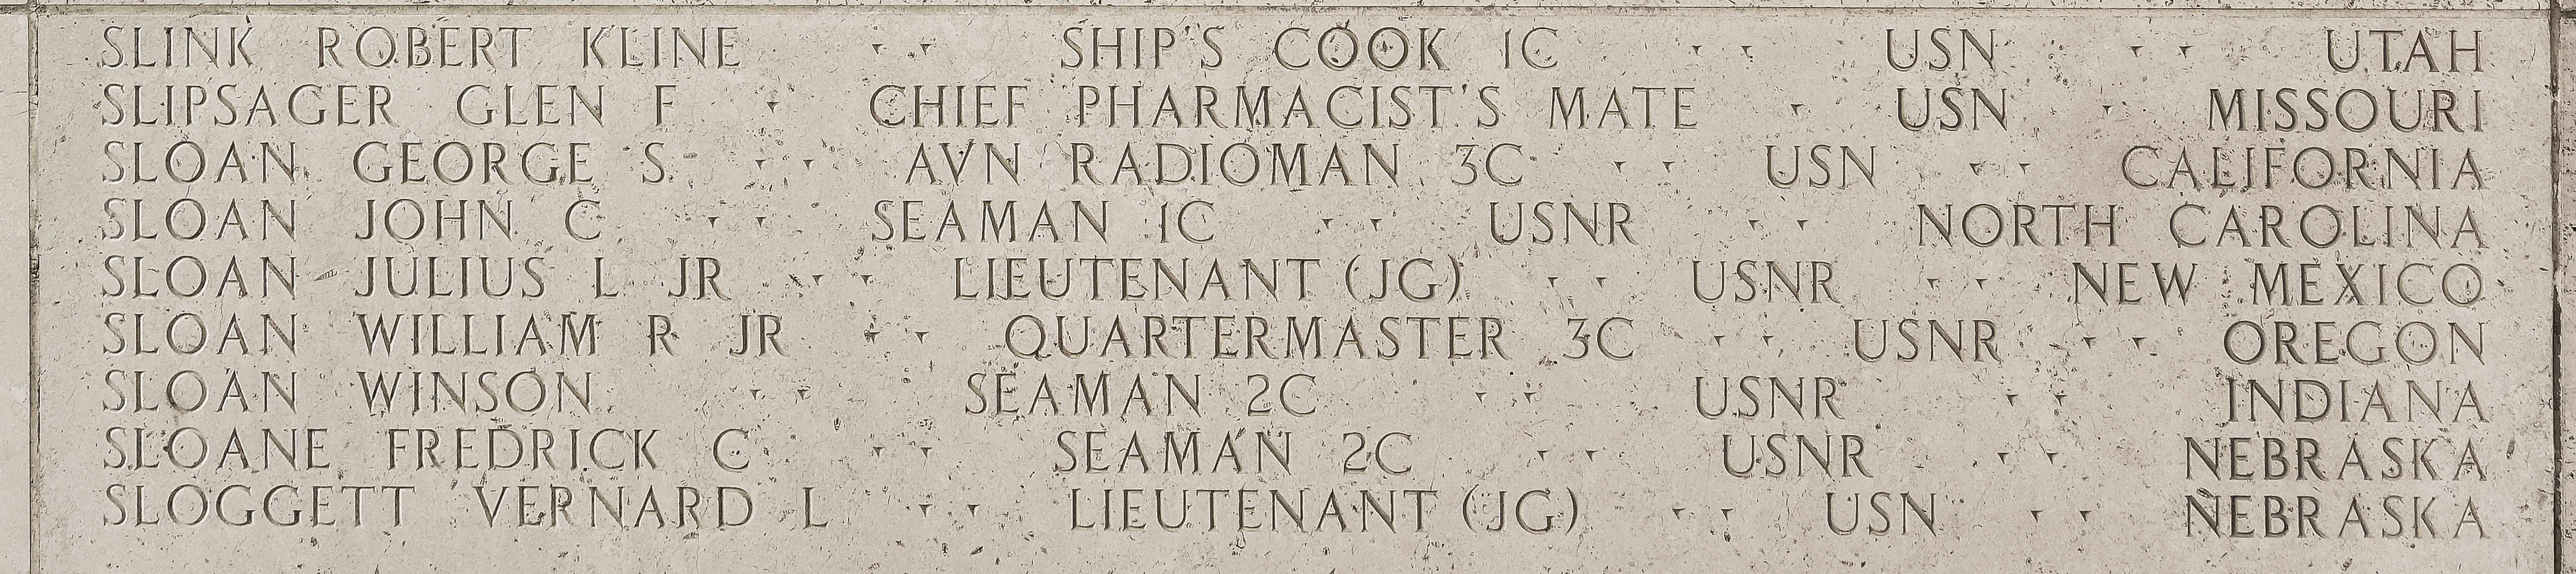 Glen F. Slipsager, Chief Pharmacist's Mate